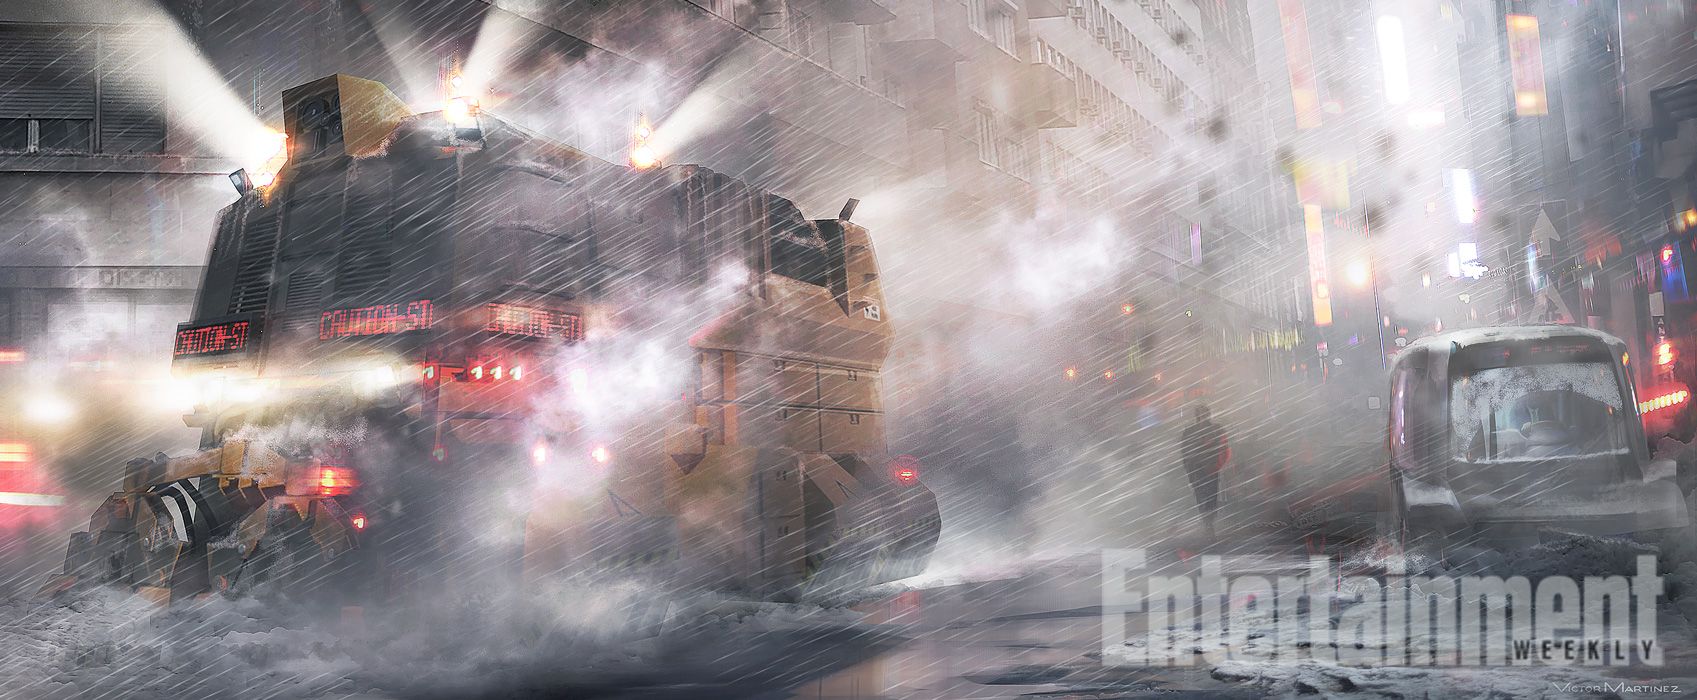 Blade Runner 2 Concept Art Revealed